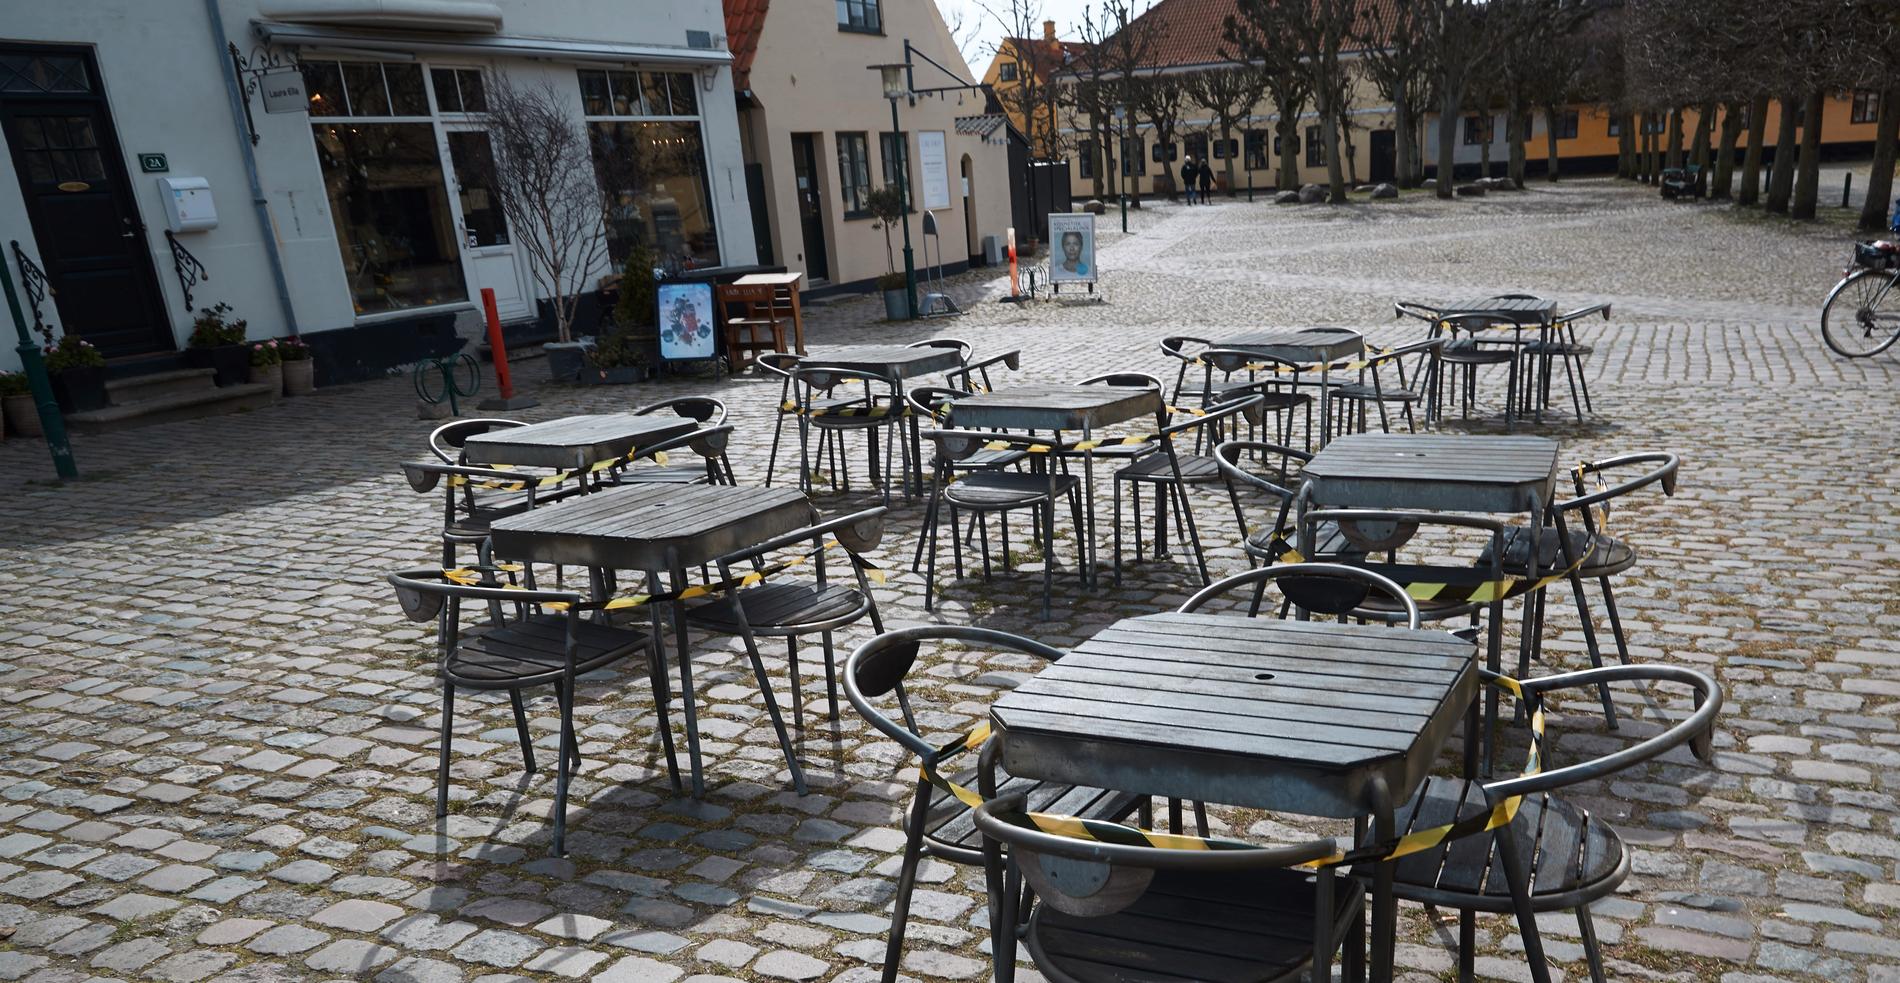 Danska restauranger får vänta ytterligare med att öppna. Bild från Dragör tidigare i veckan.